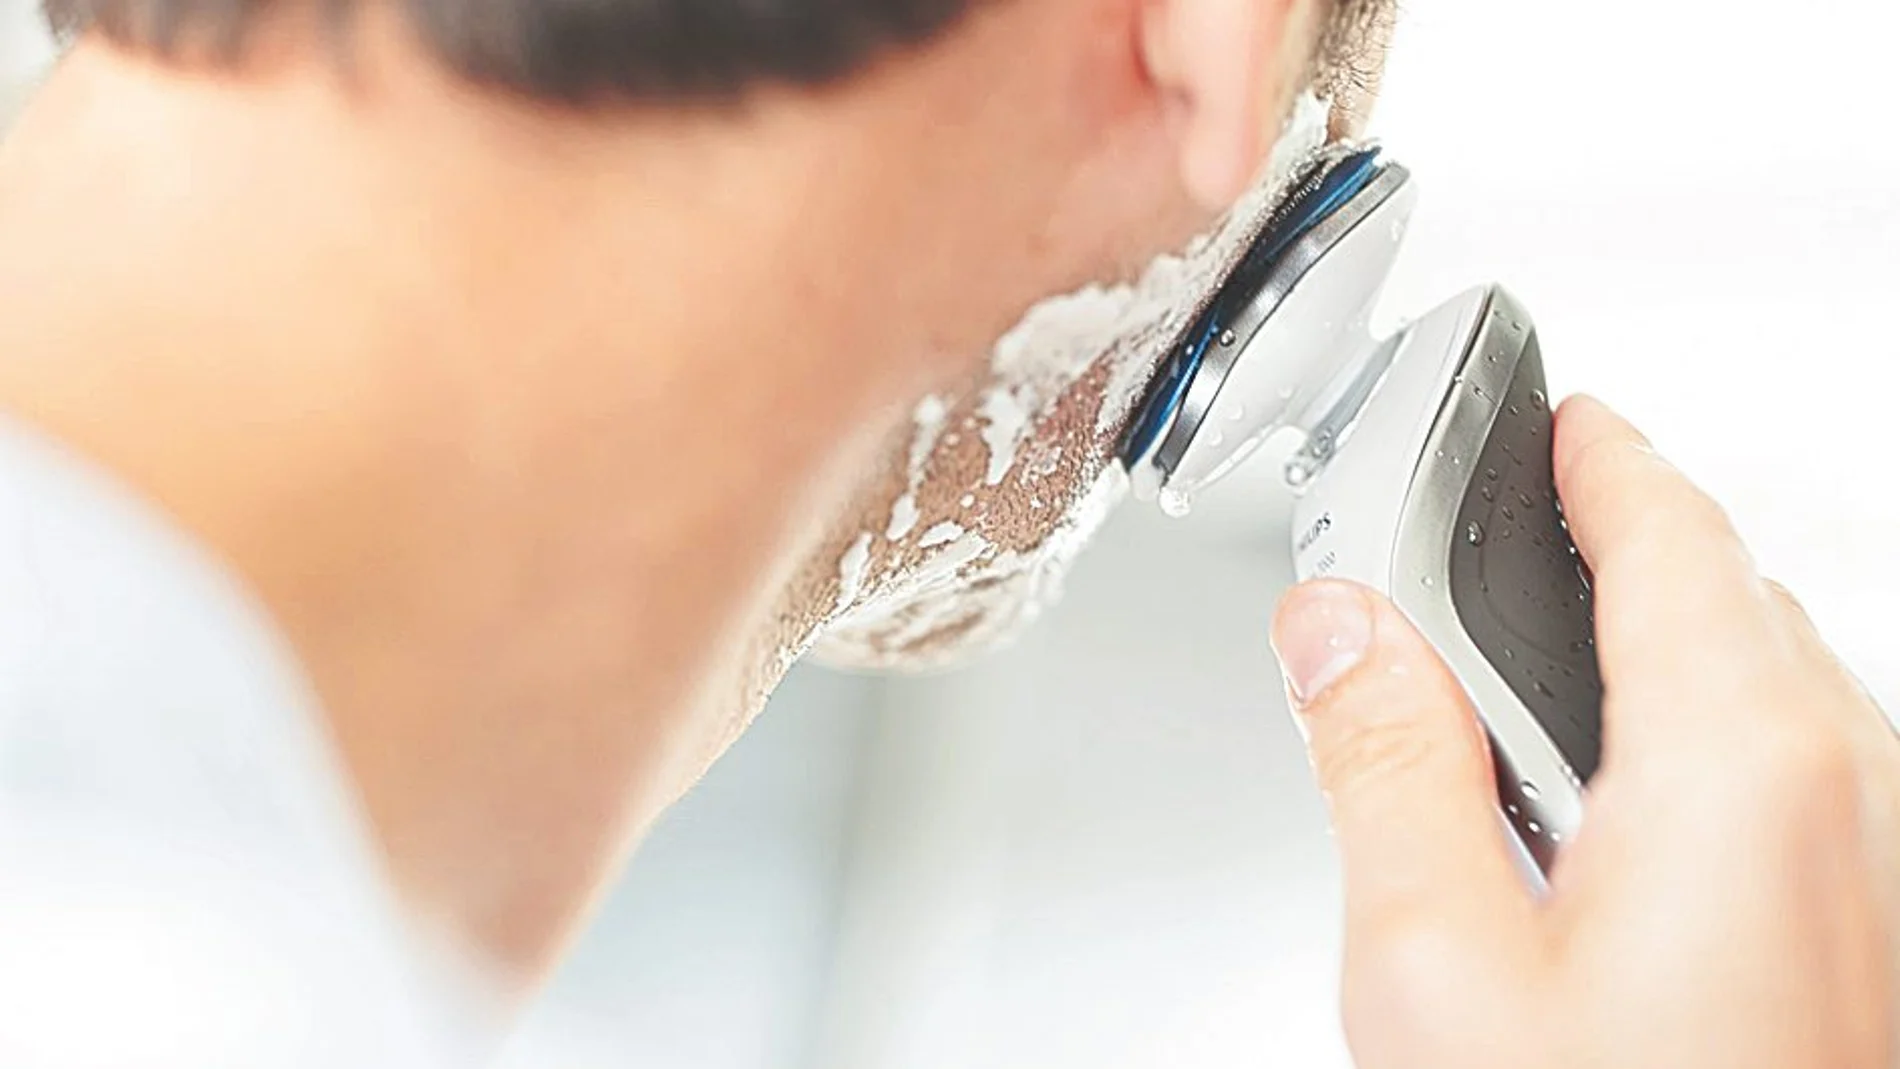 El sistema de cuchillas de la afeitadora Philips Serie 7000 debe estar especialmente diseñado para ofrecer un afeitado muy apurado a la vez que protege la piel